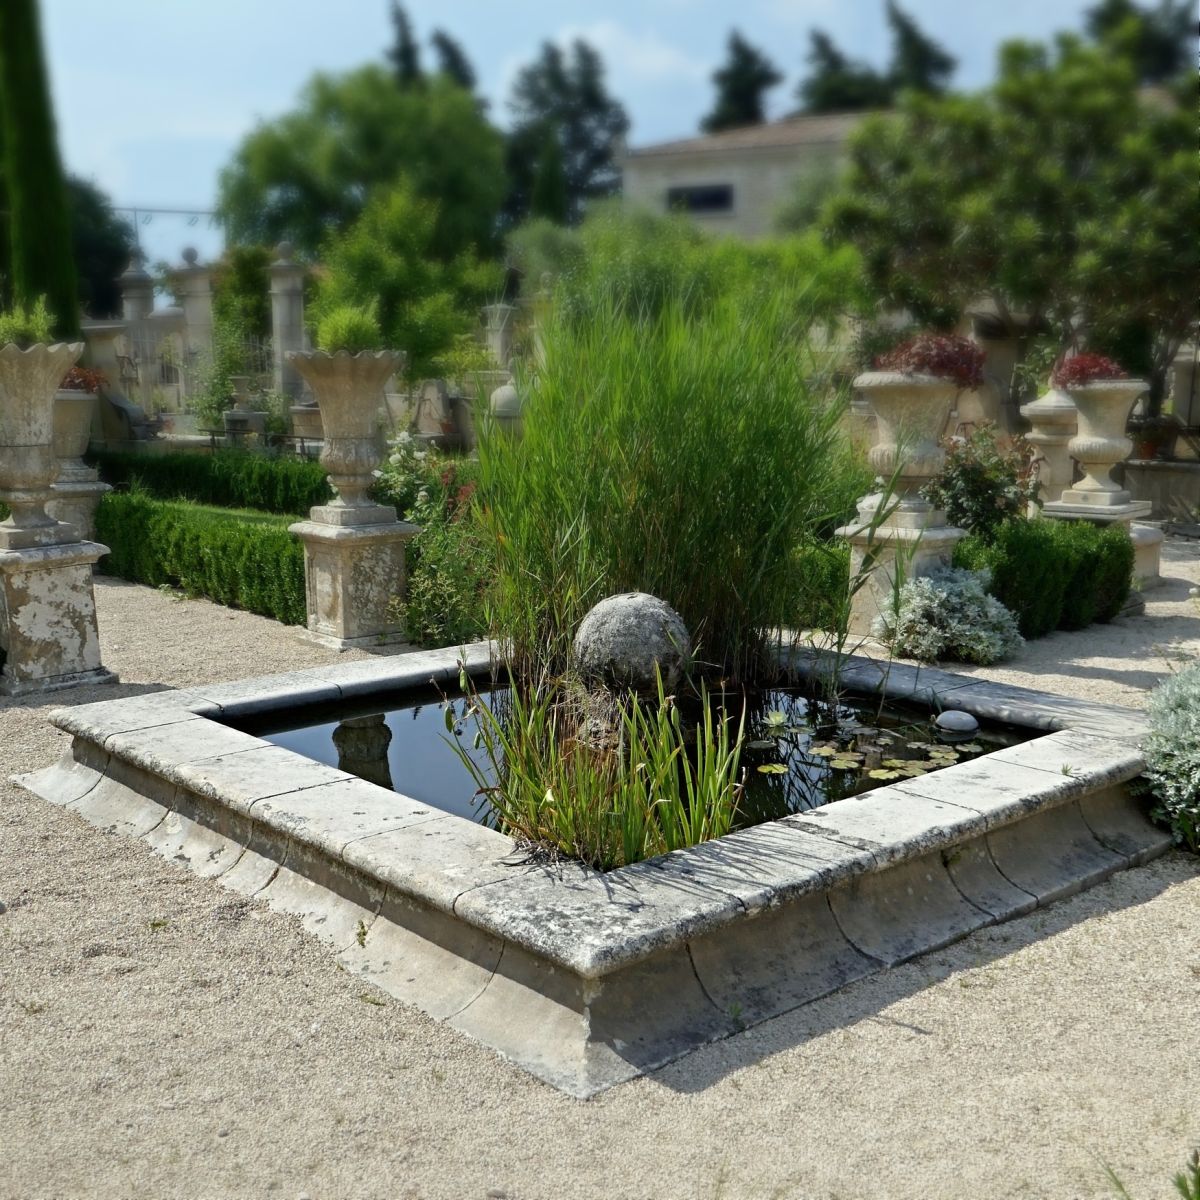 Bassin de jardin en pierre taillée - Ateliers Bidal tailleur de pierre